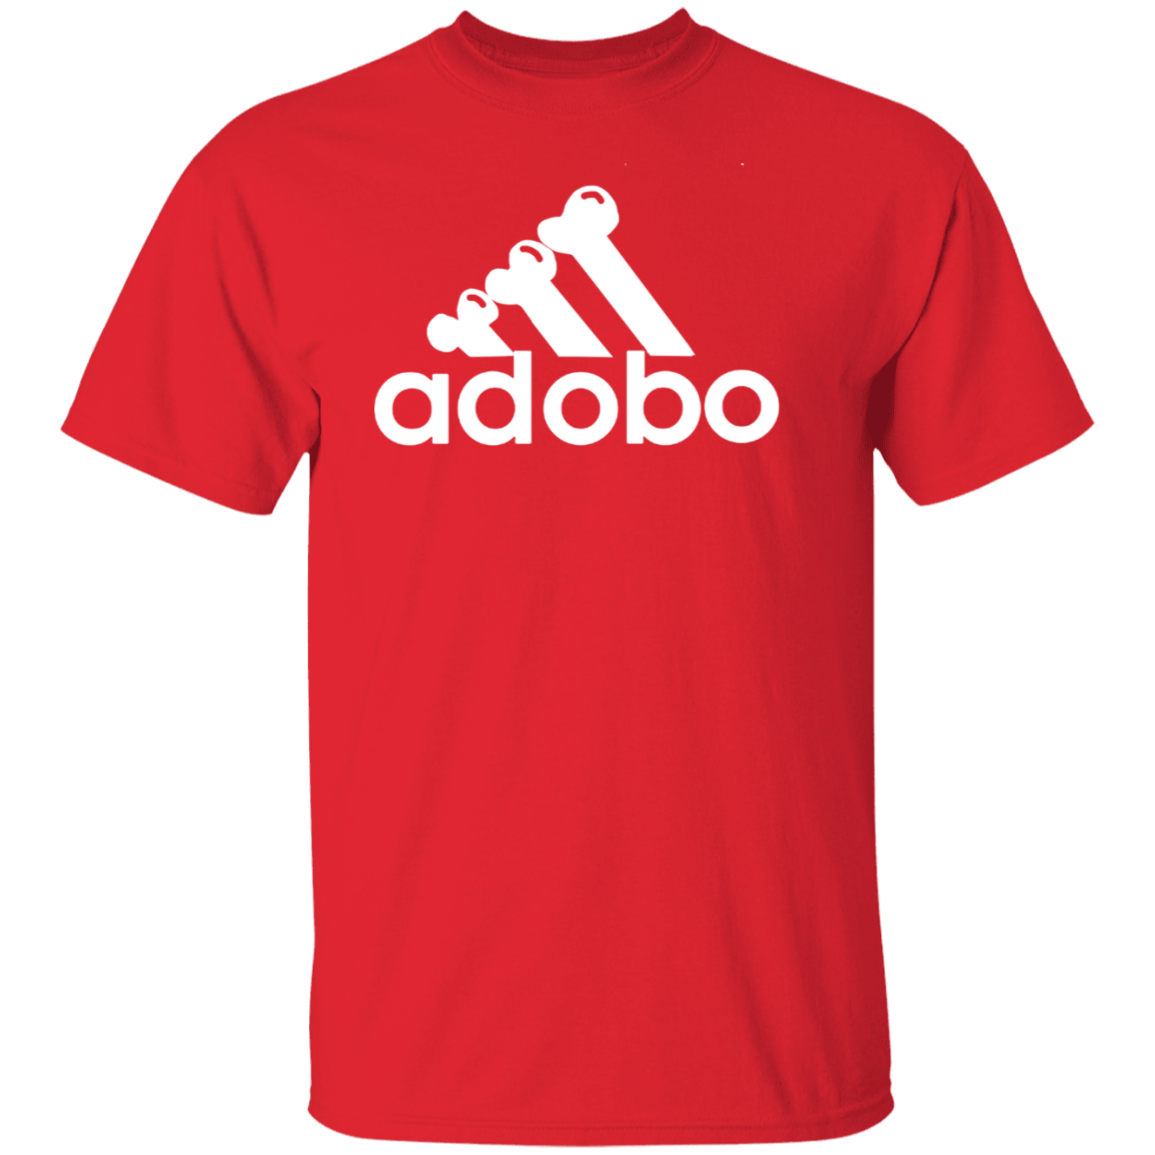 ArtichokeUSA Custom Design. Adobo. Adidas Parody. 5.3 oz. T-Shirt